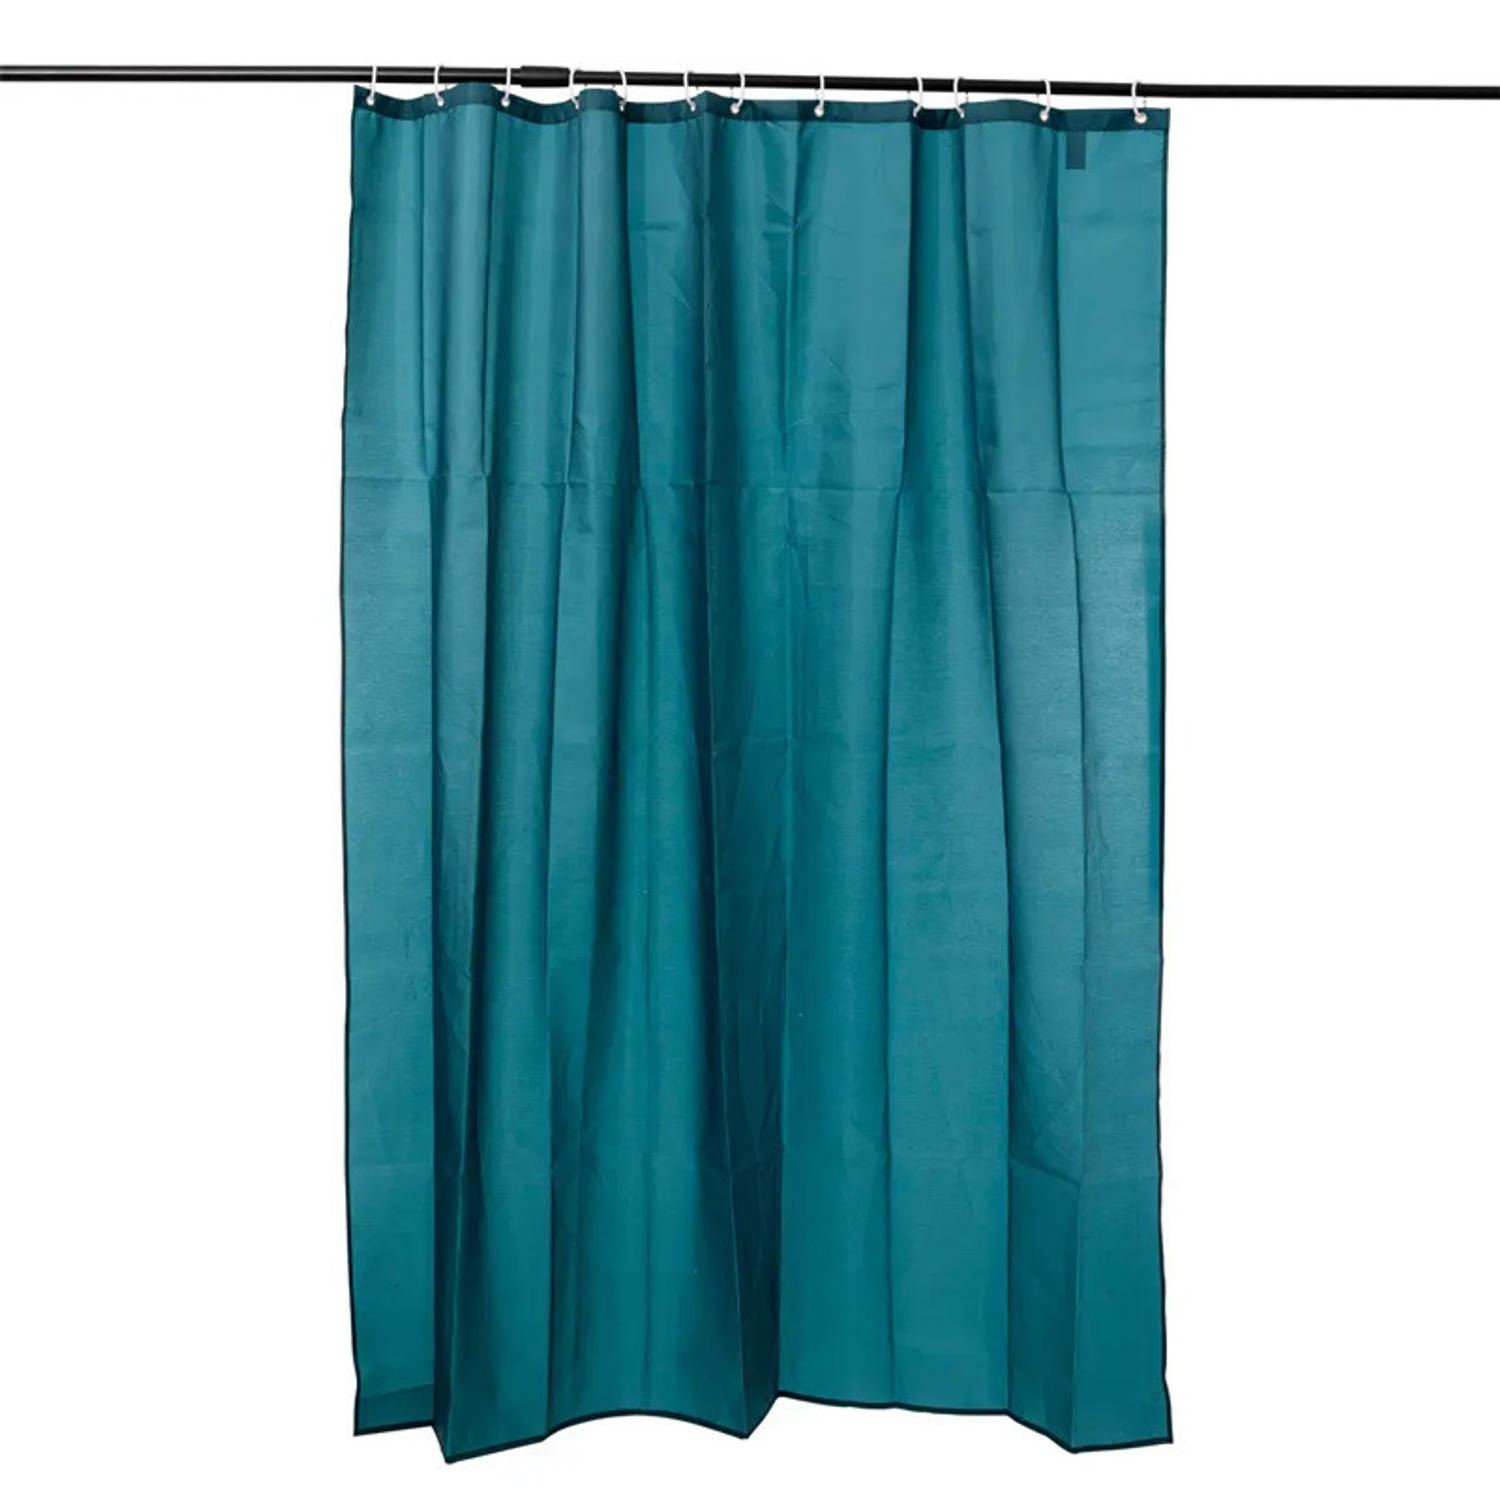 5Five Douchegordijn - petrol blauw - polyester - 180 x 200 cm - inclusief ringen - Voor bad en douche